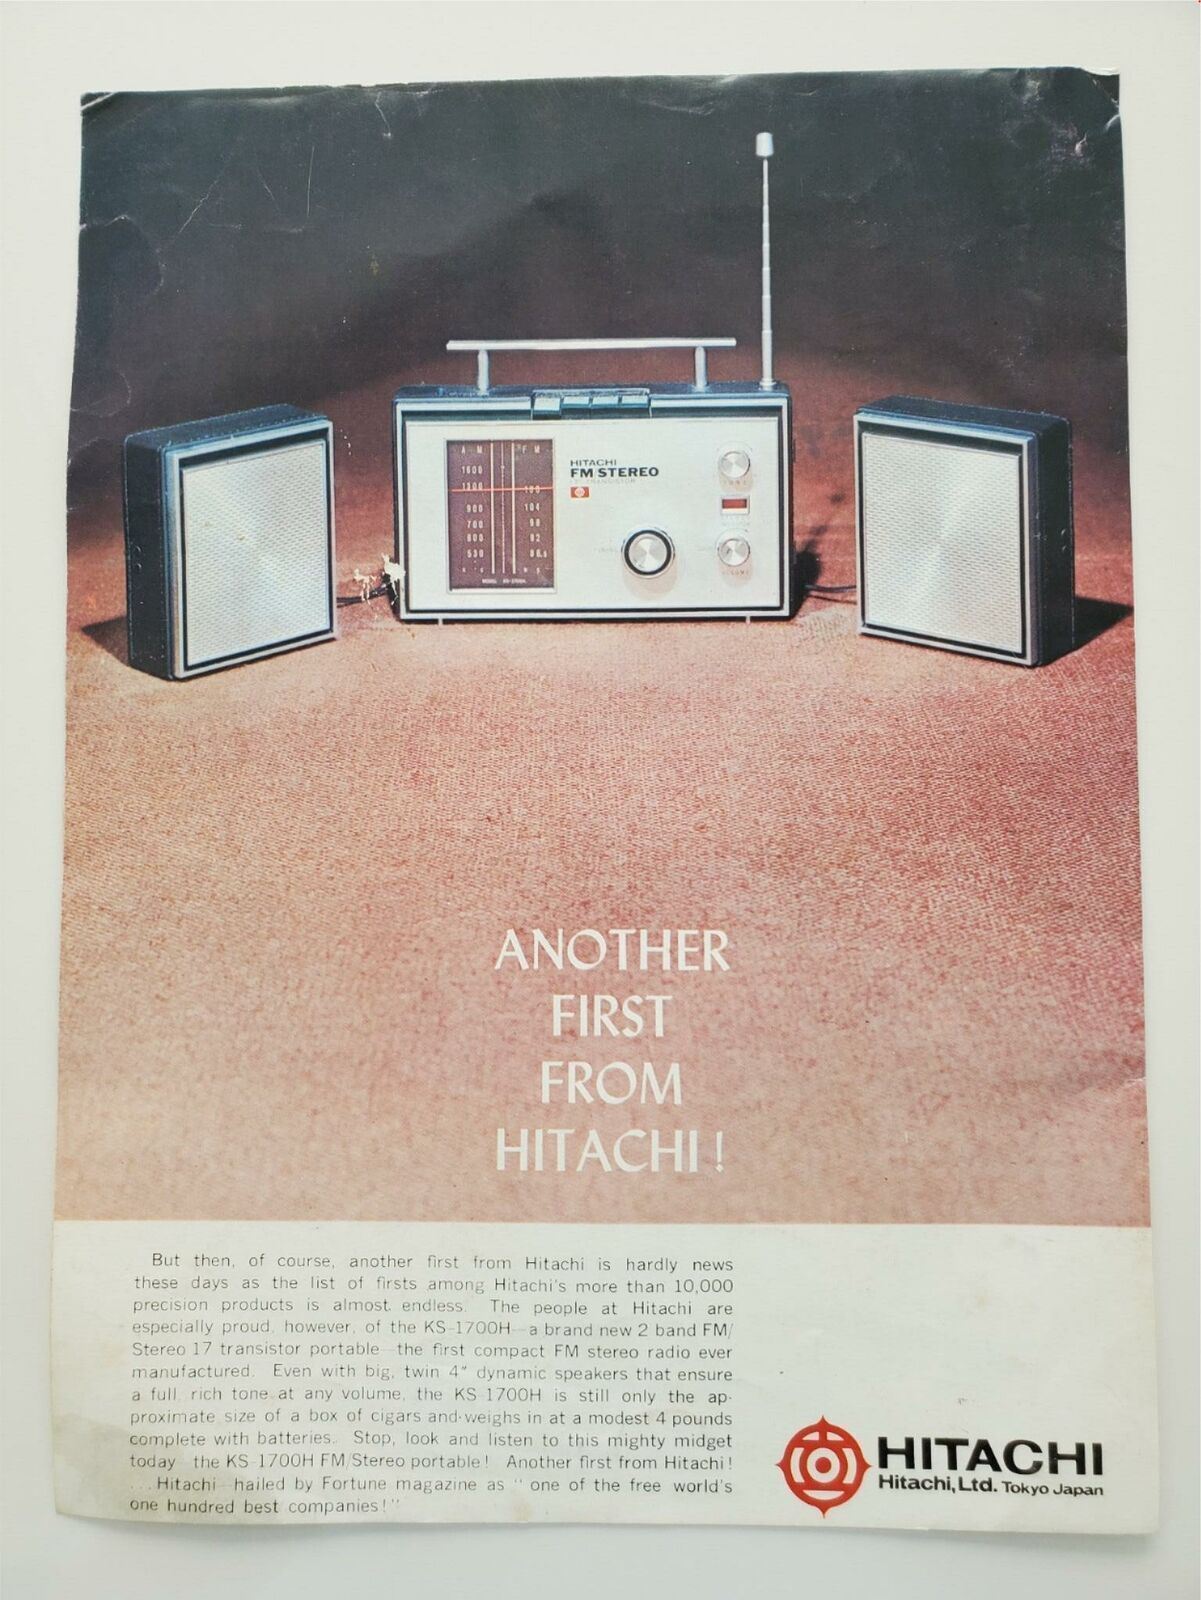 Hitachi KS-1700H 2 Band FM Stereo Radio Vintage print Ad 1968